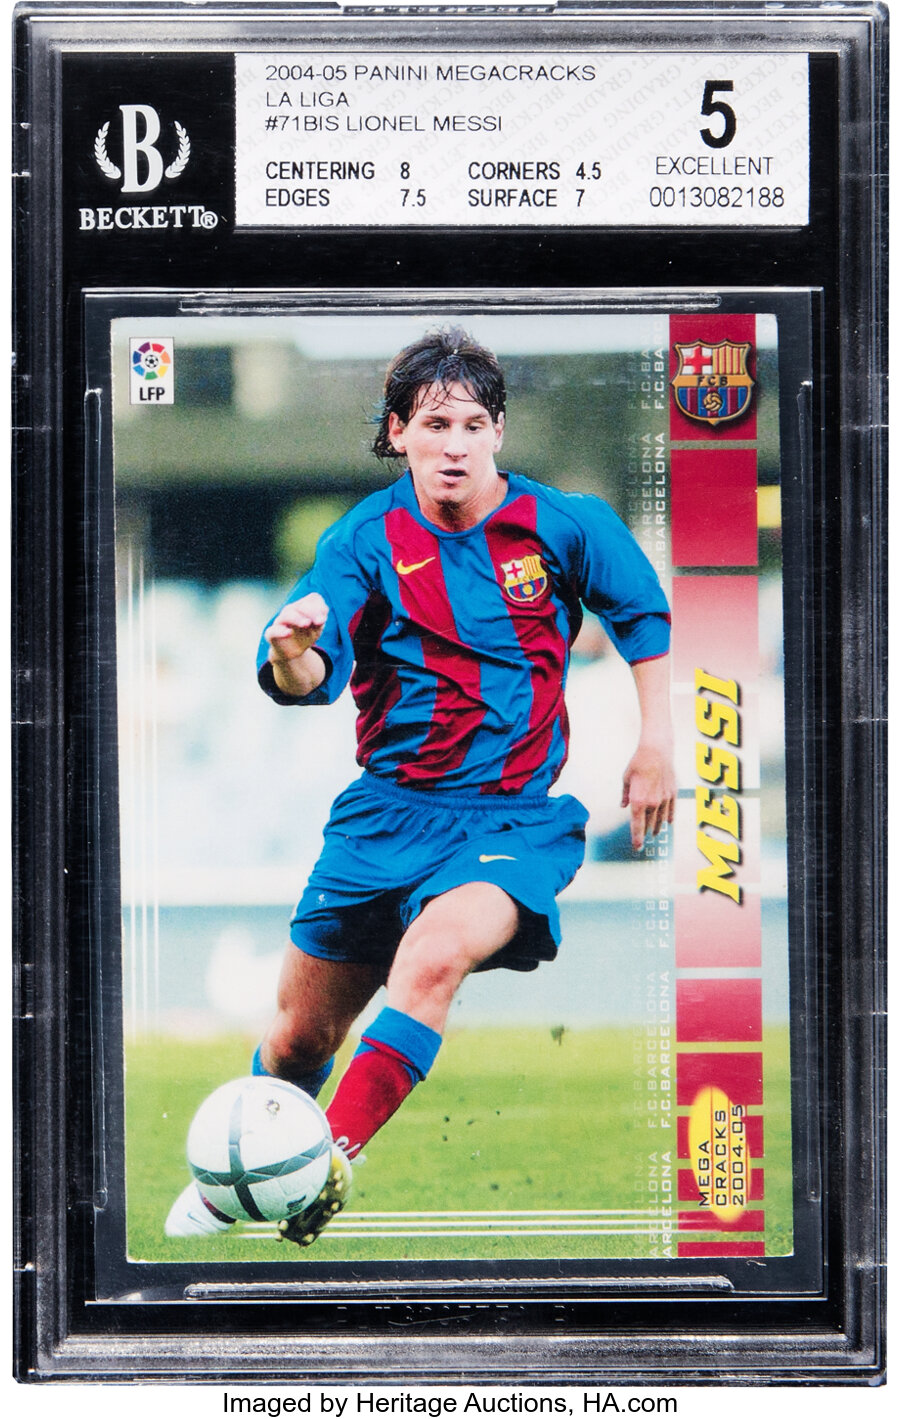 2004 Panini Megacracks La Liga Lionel Messi Rookie #71 BGS EX 5